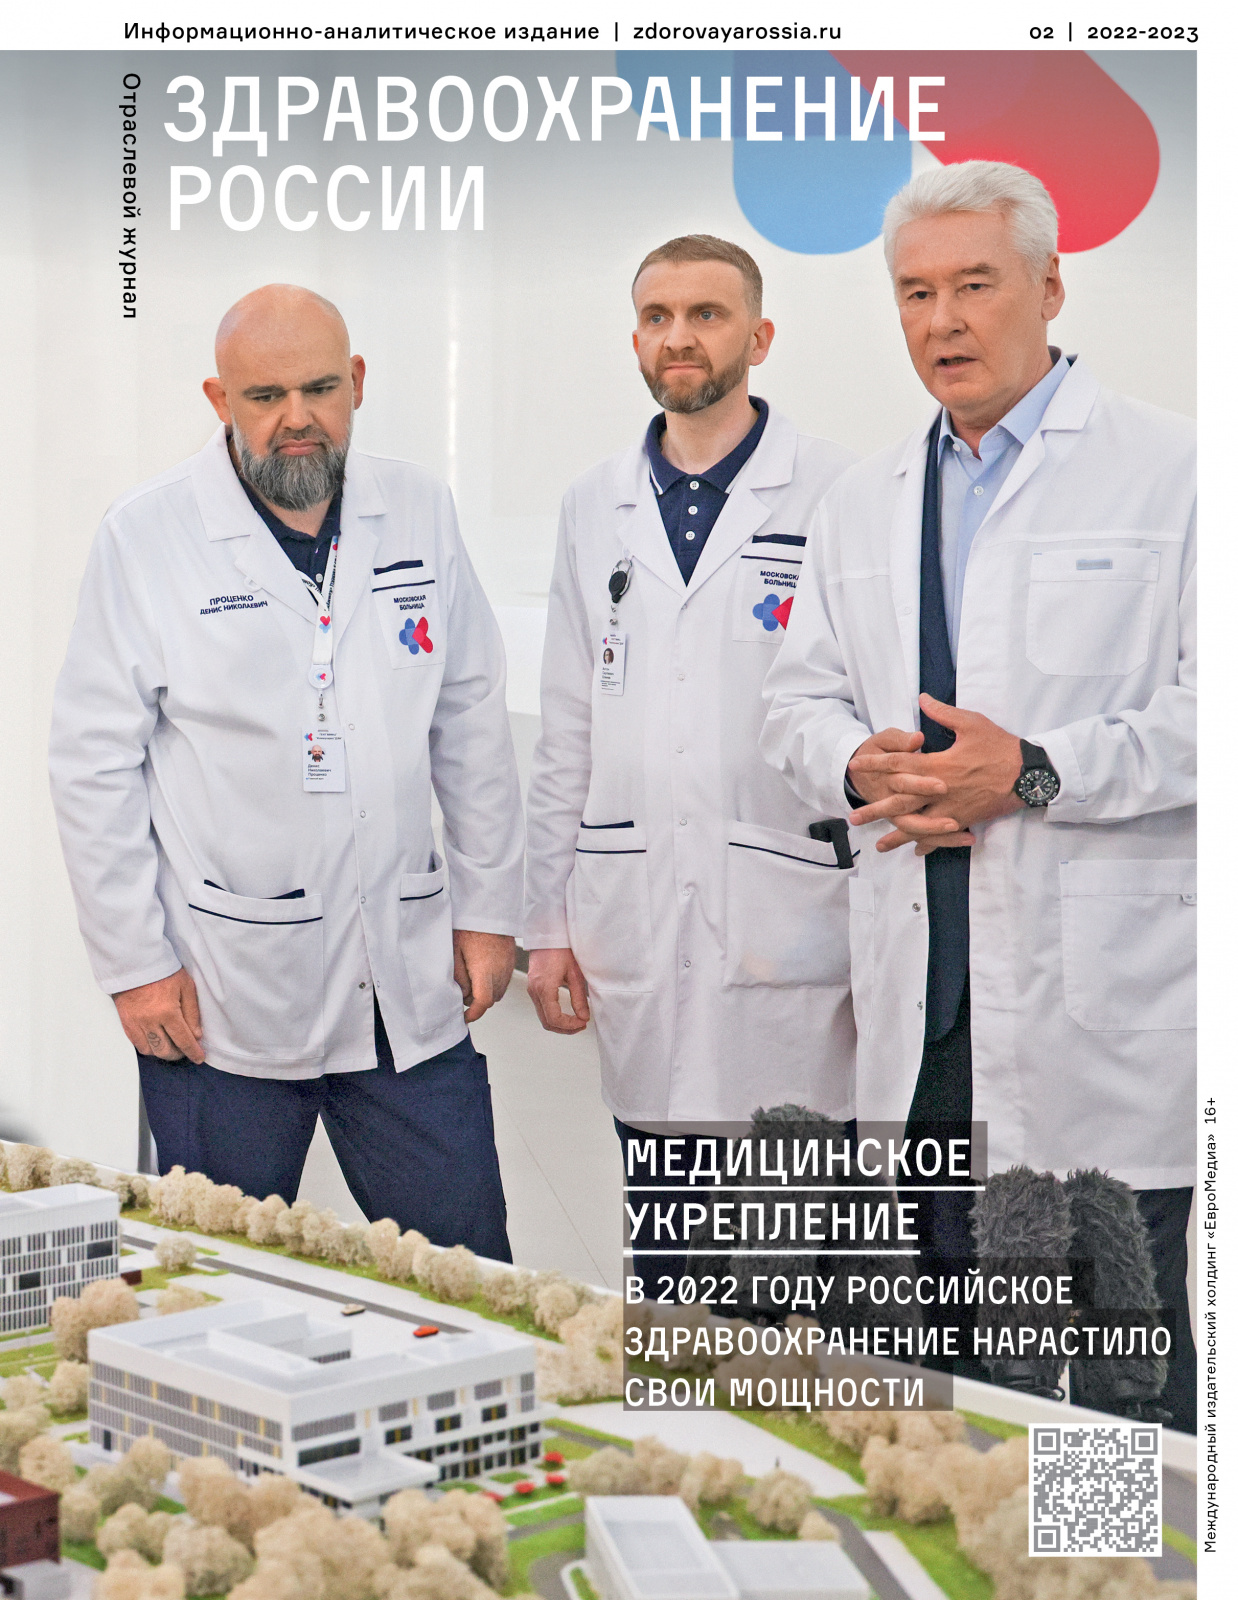 Как изменилась отечественная медицина в 2022 году, рассказал итоговый номер журнала «Здравоохранение России»